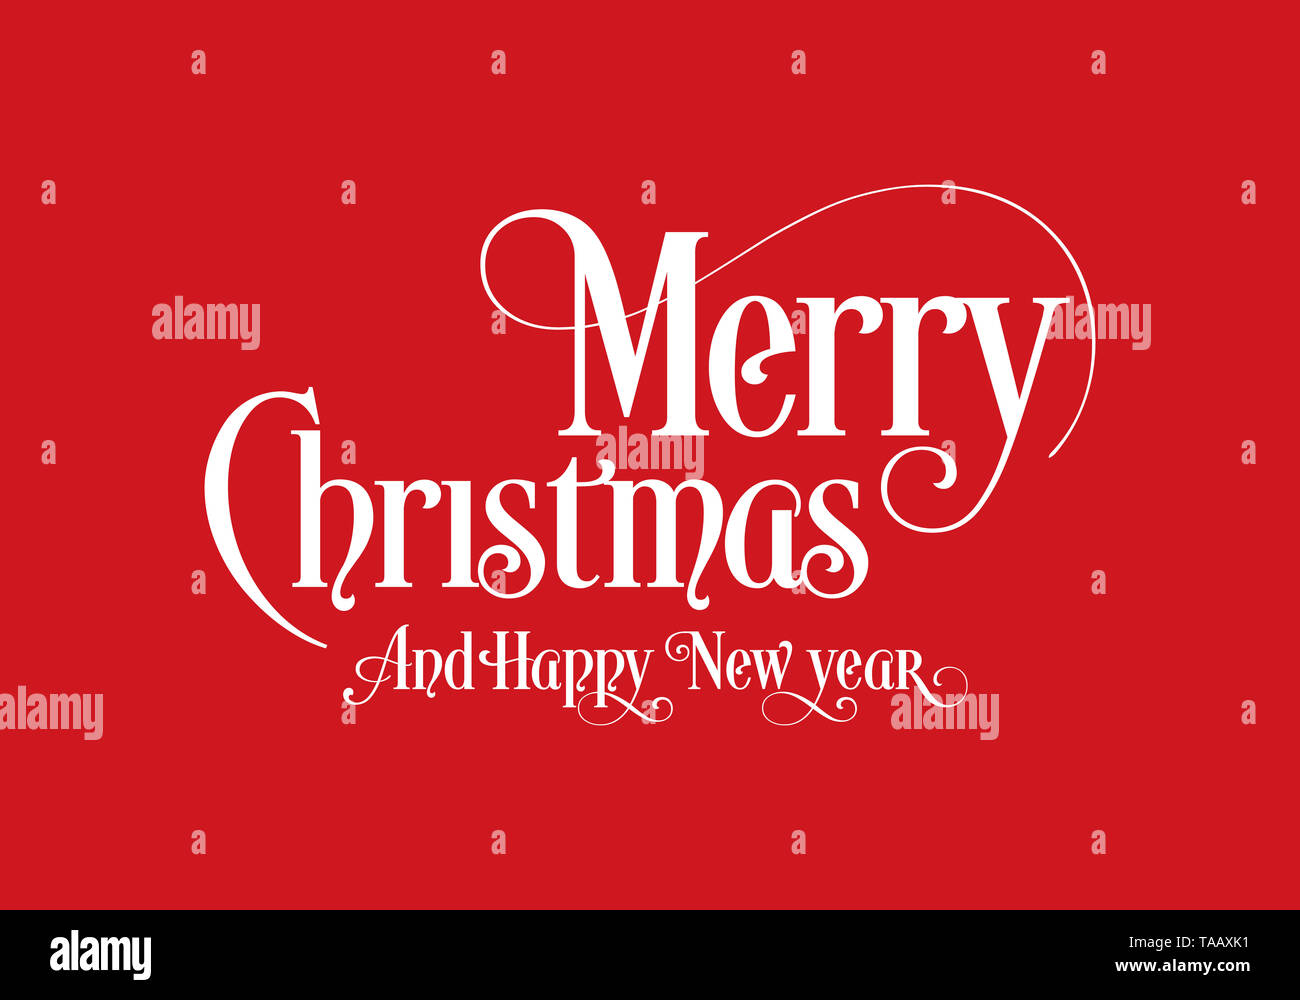 Felice Natale scritte Calligraphy testo Art Design con sfondo rosso. Merry Christmas testo Design Logo vettoriale, tipografia. Foto Stock